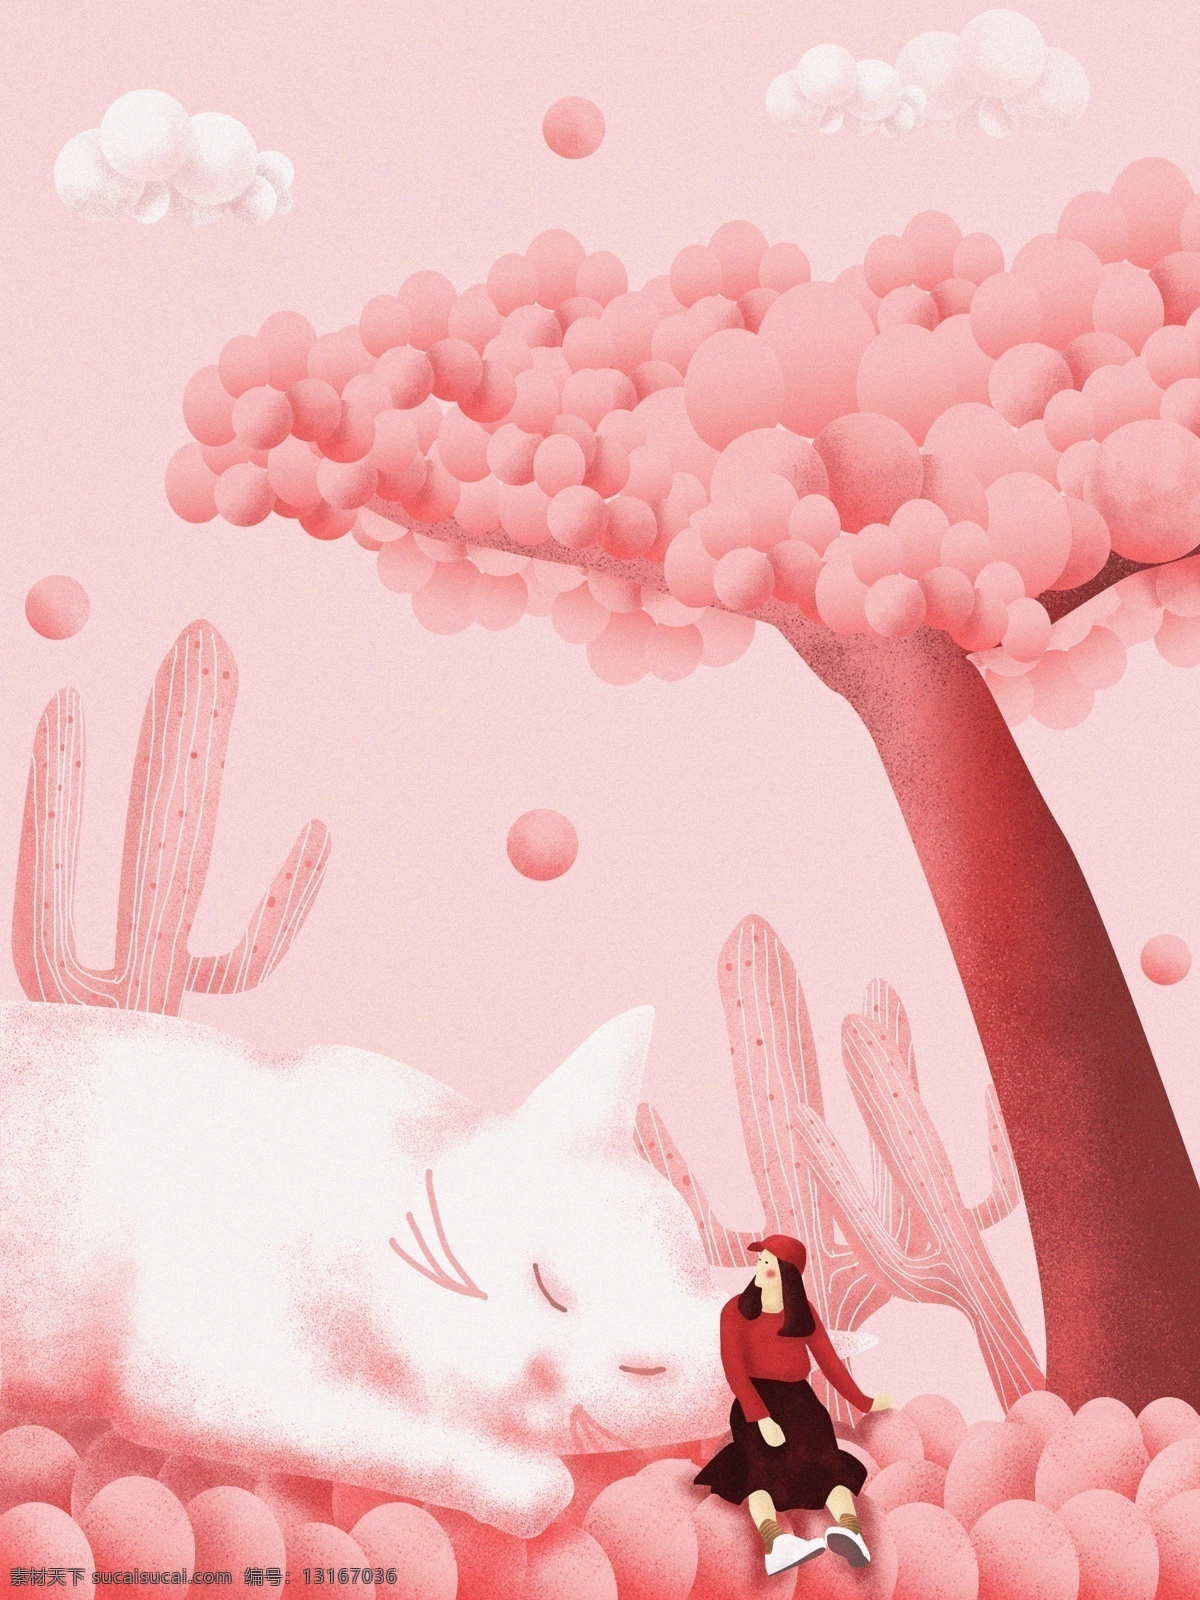 十二月 你好 原创 插画 猫咪 女孩 配图 壁纸 治愈 粉色